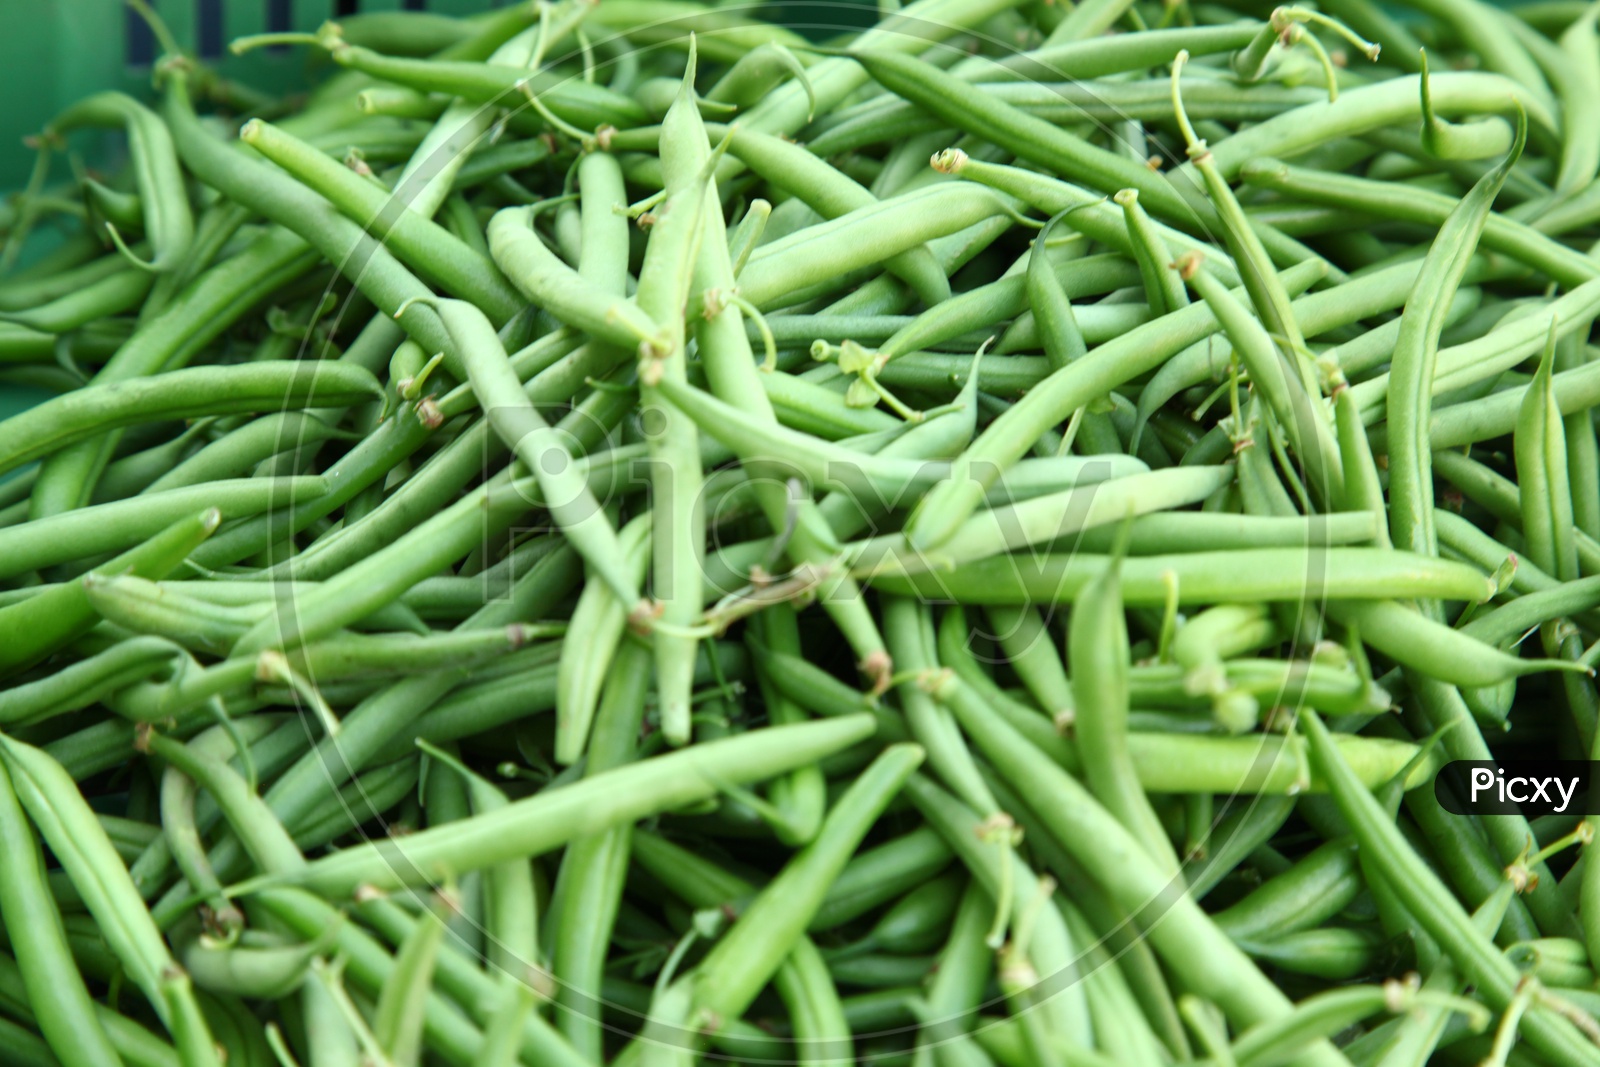 Green beans